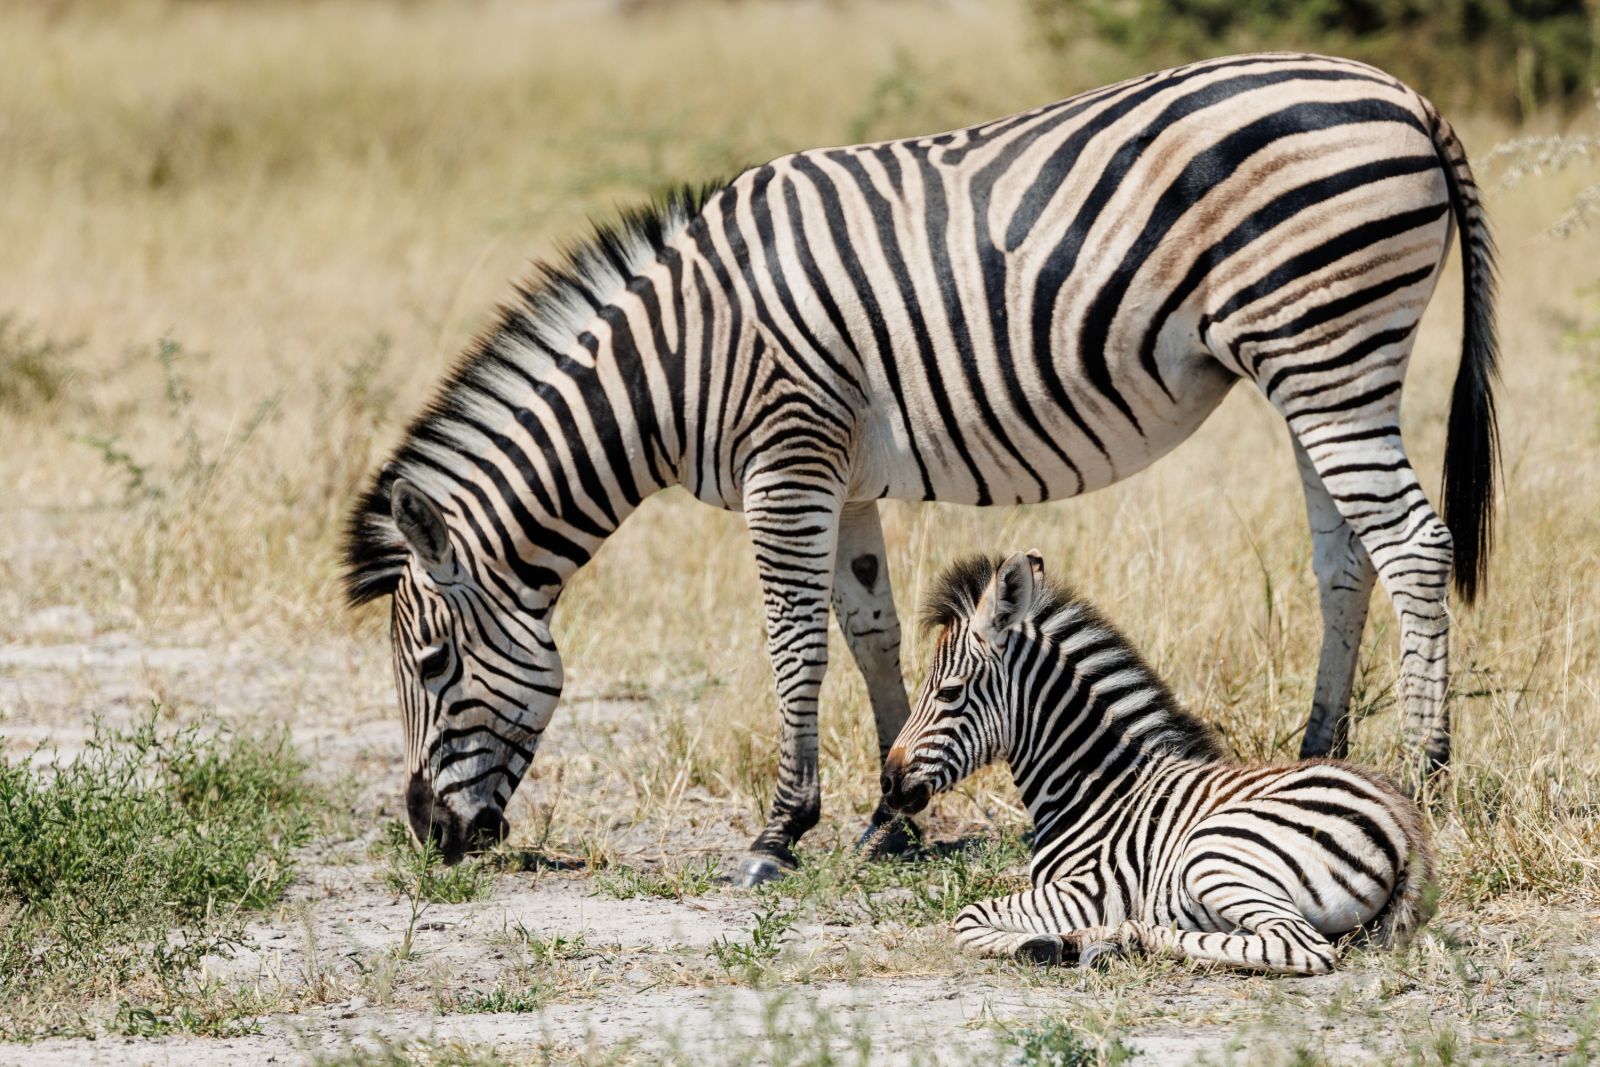 Begegnung auf dem Rückweg nach Maun: Eine Zebramutter grast seelenruhig am Weg, das Fohlen ruht an ihrer Seite (Moremi).